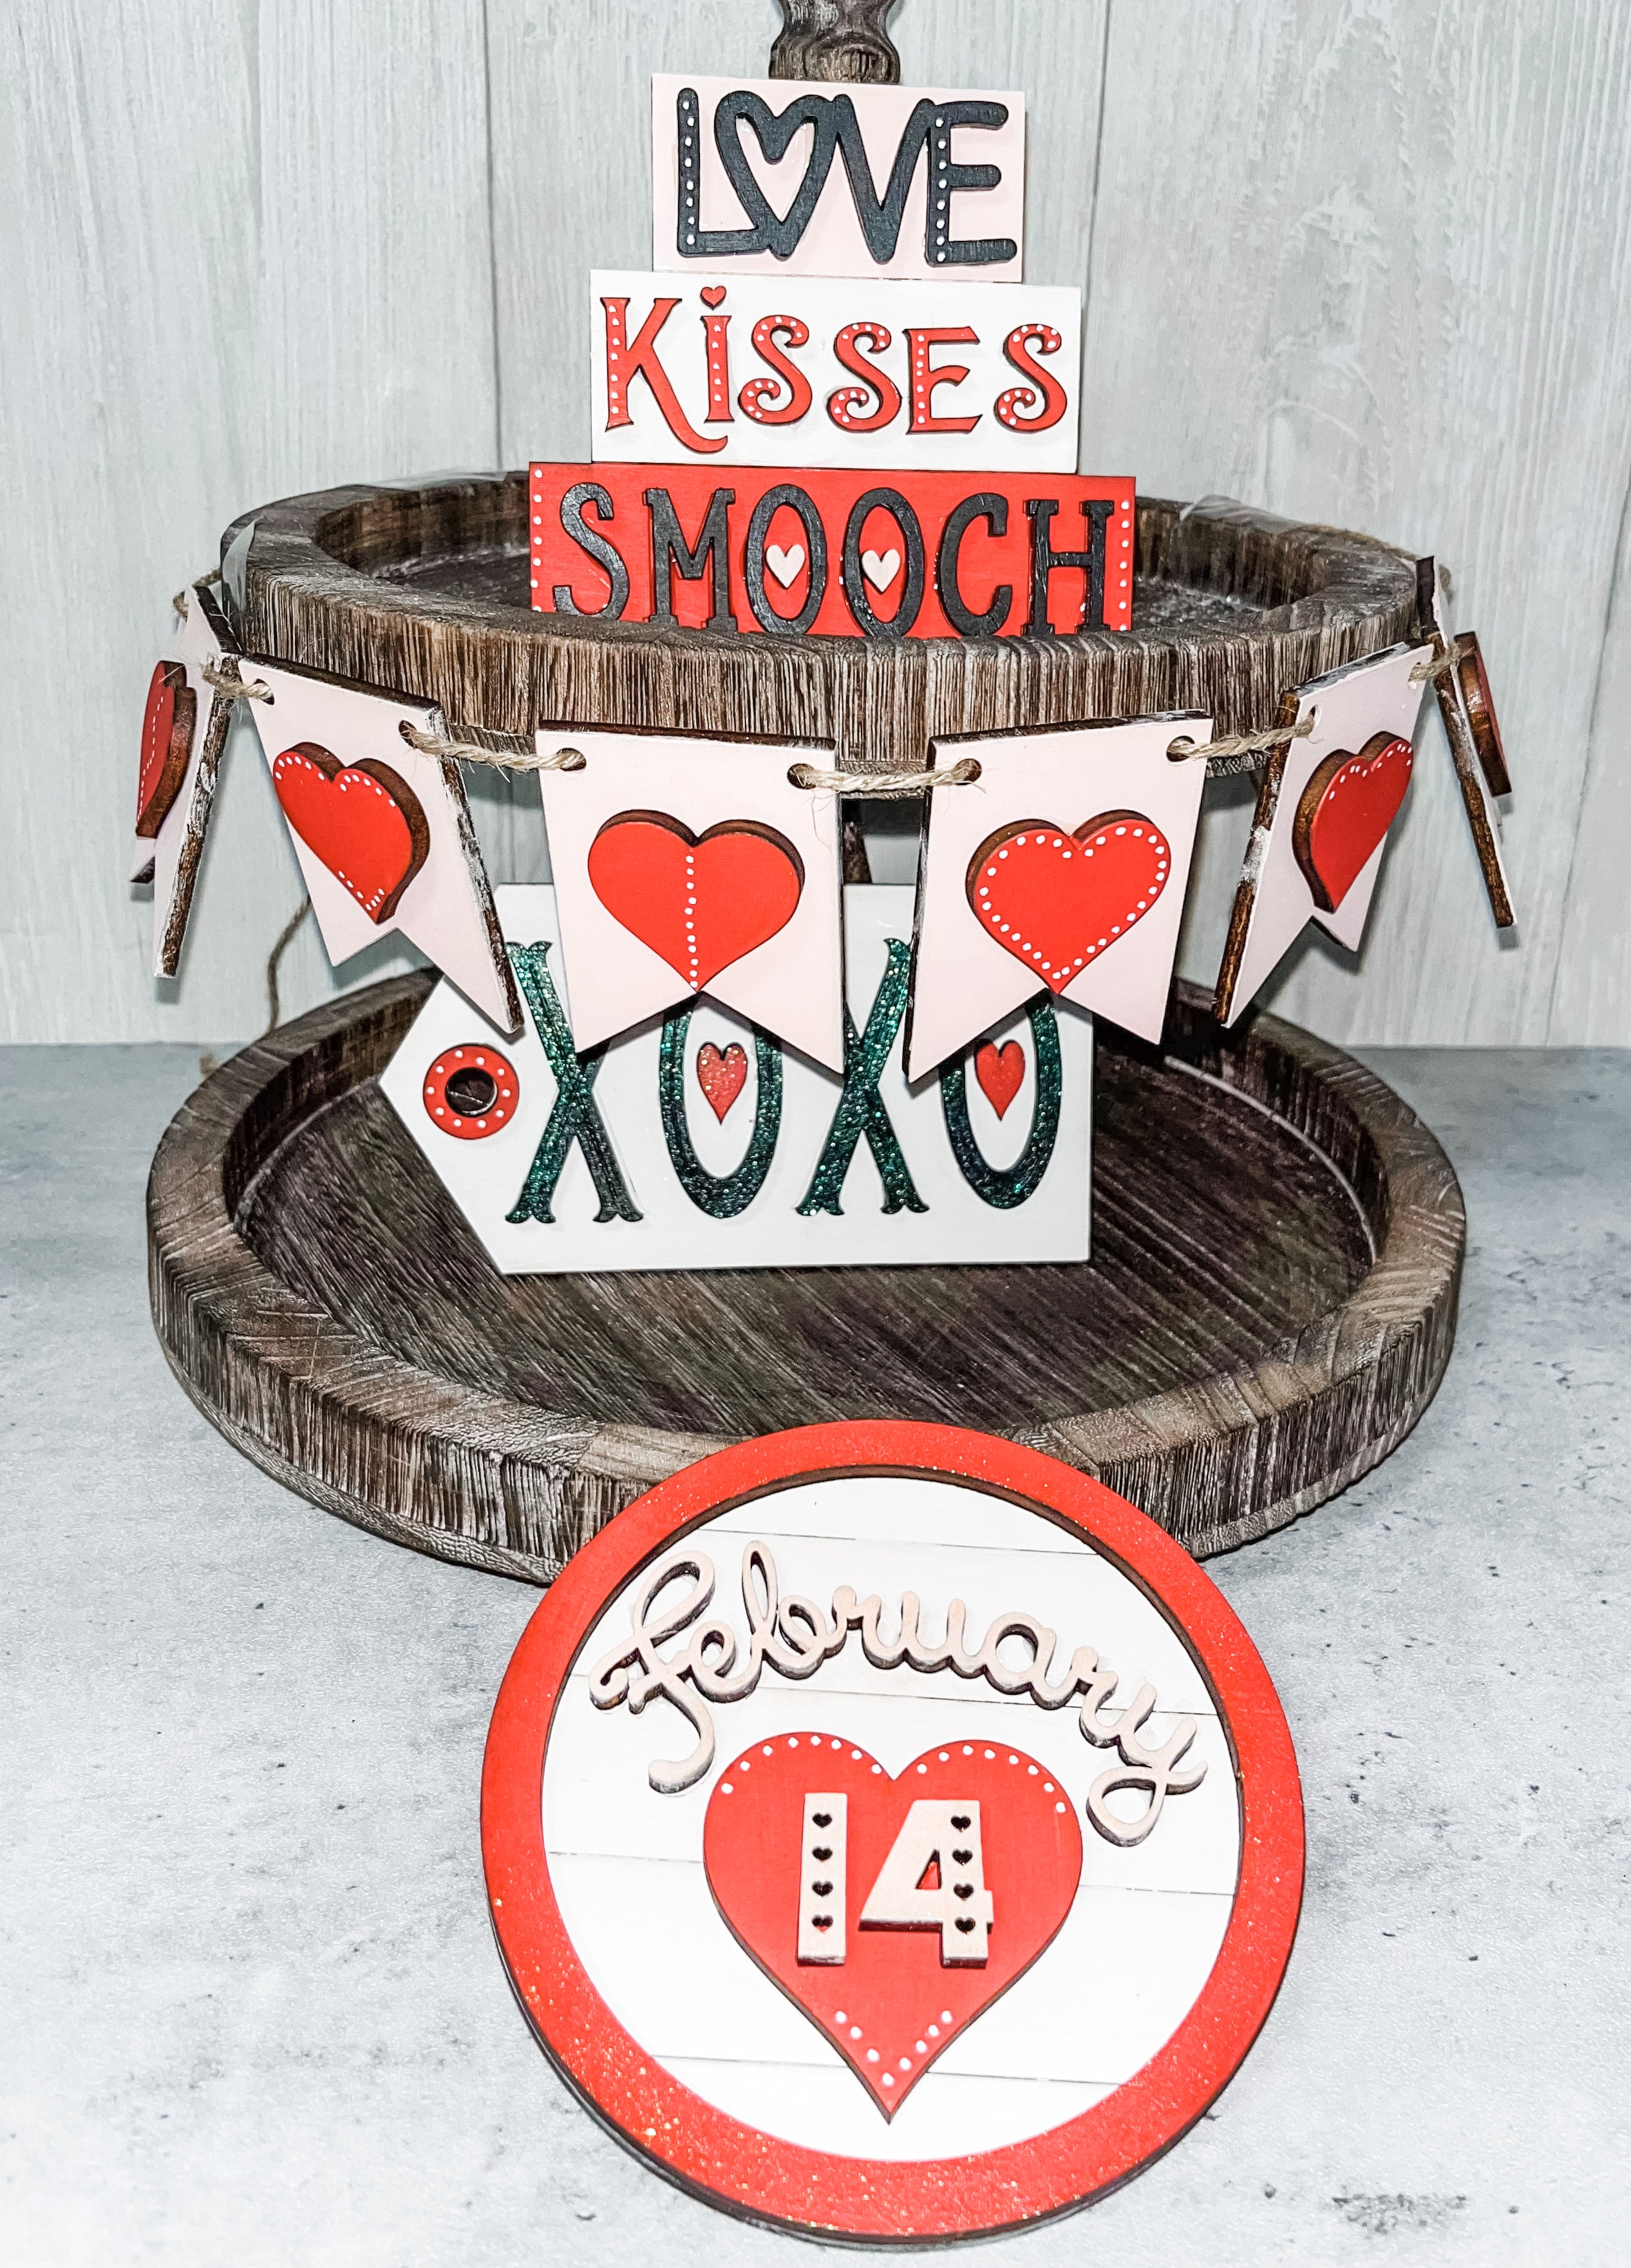 Love, Kiss, Smooch Tier Tray DIY Kit